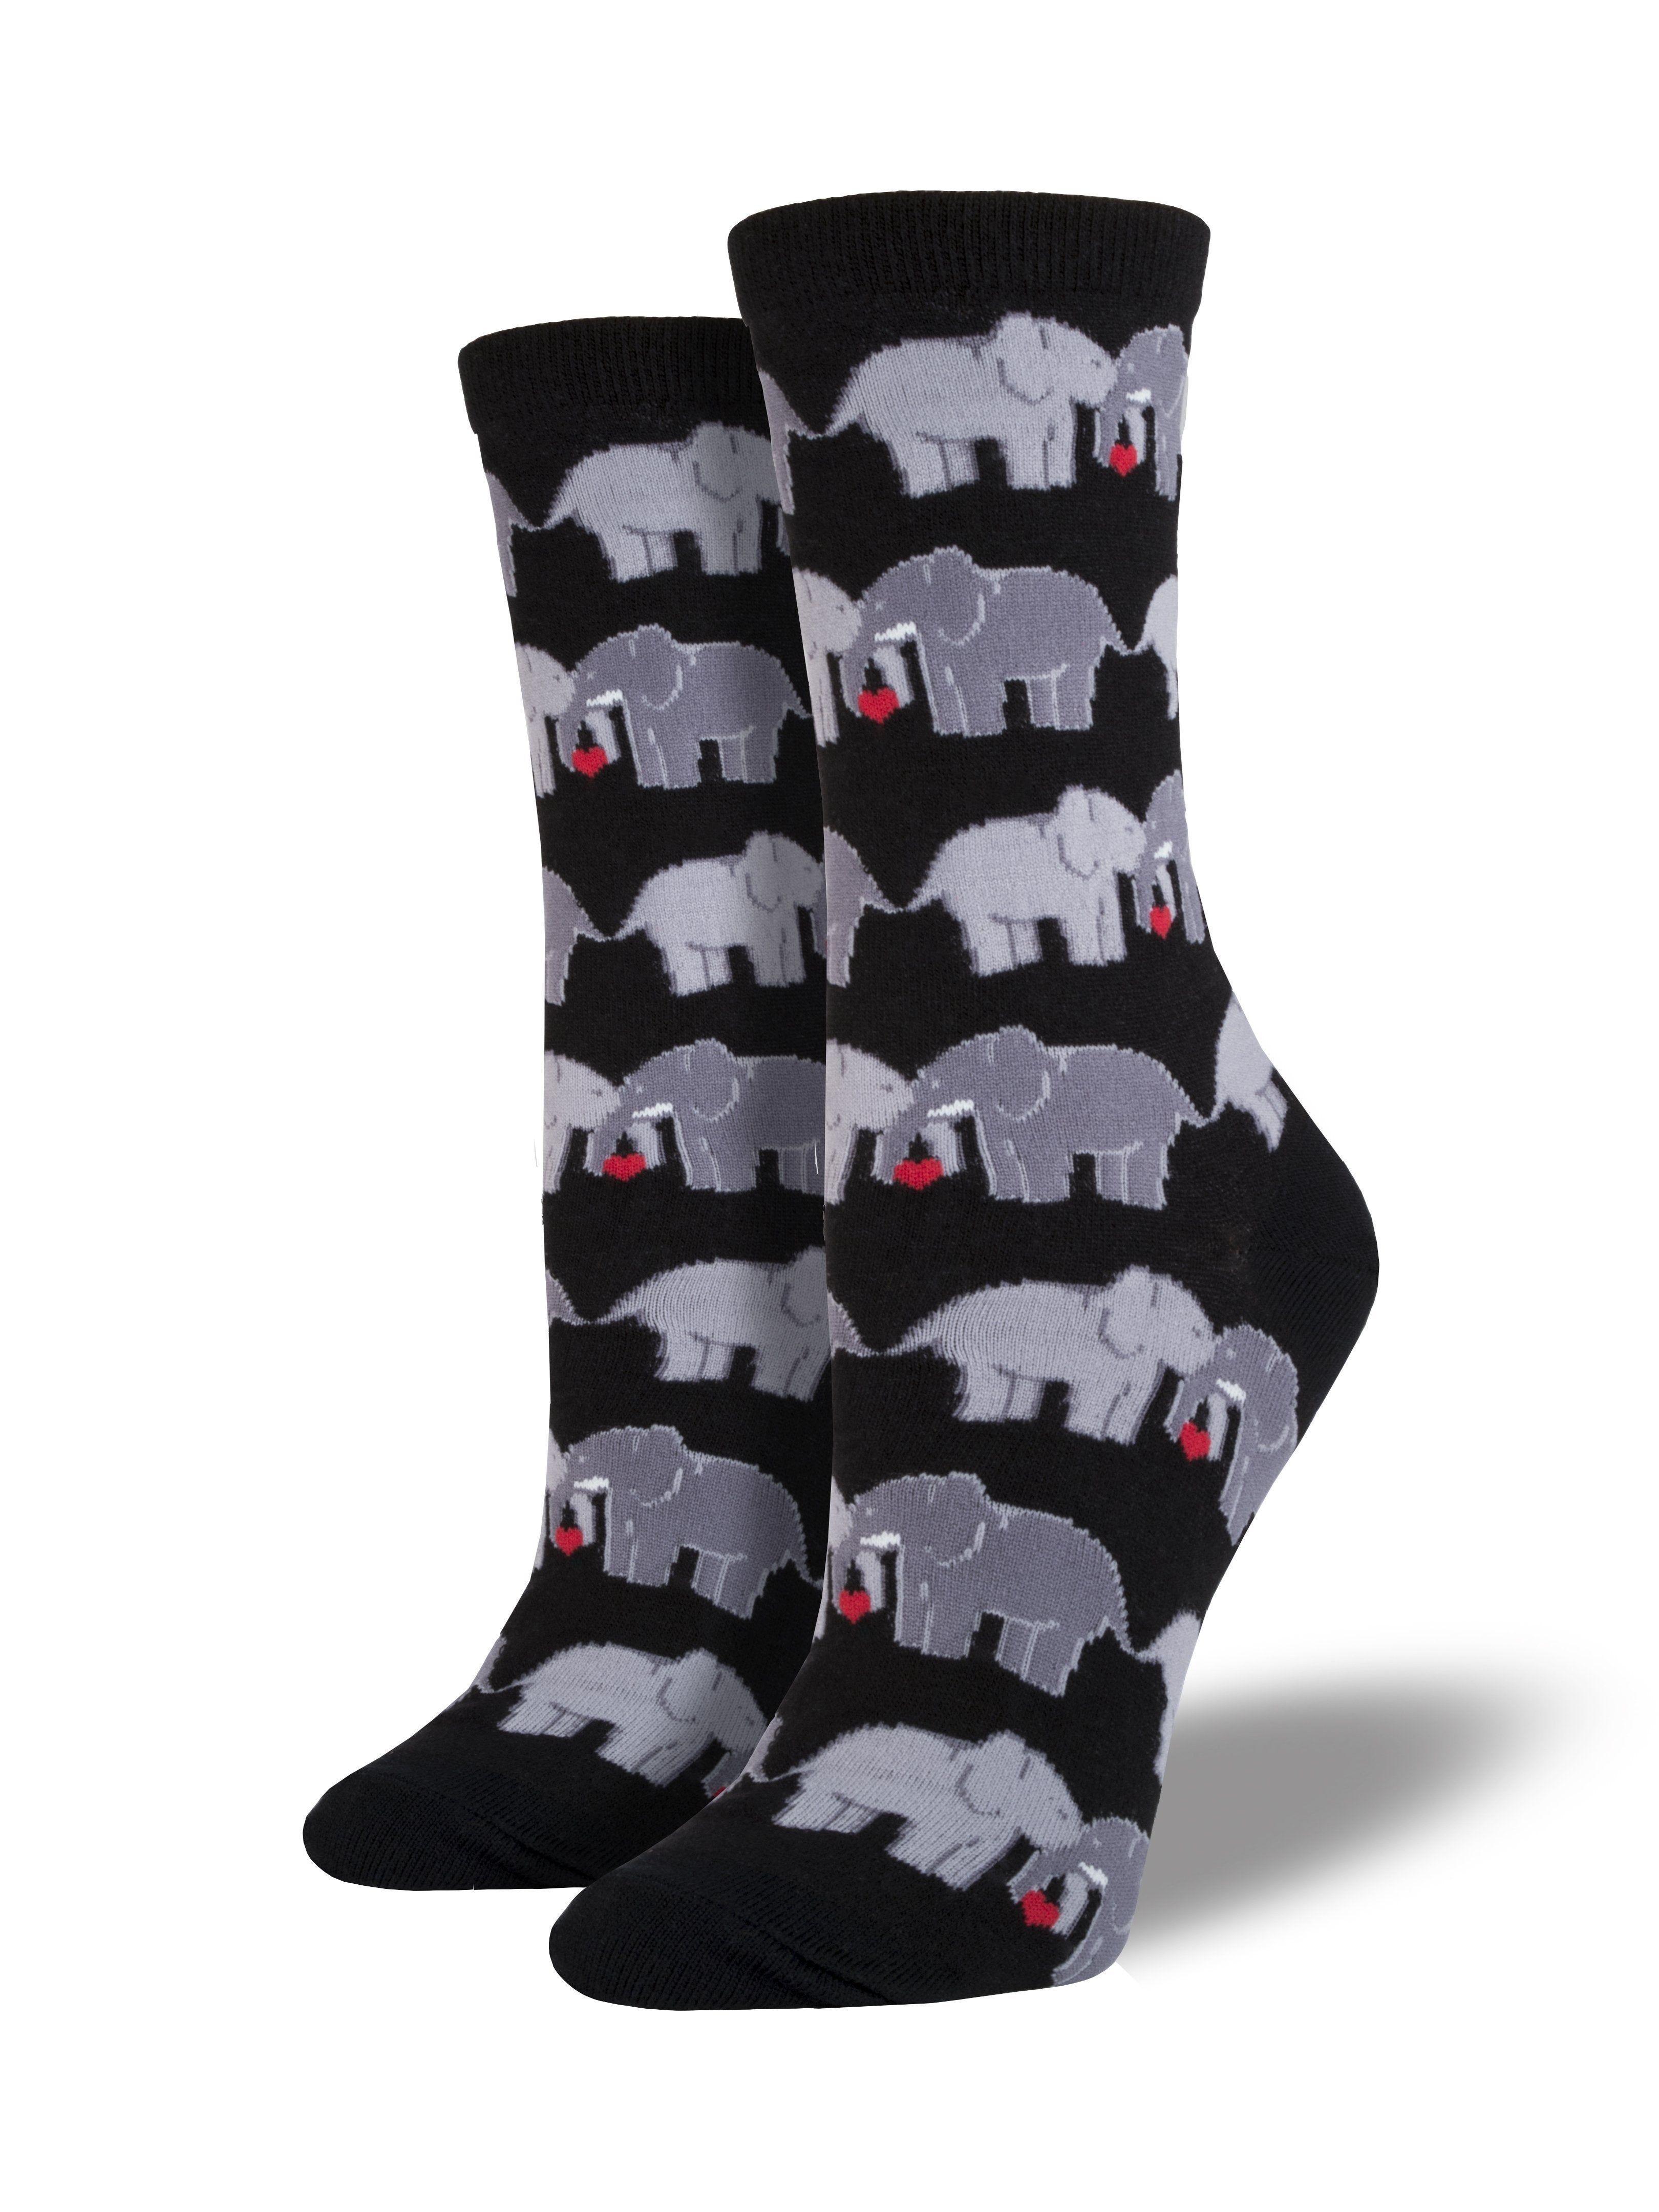 Women's "Elephant Love" Socks